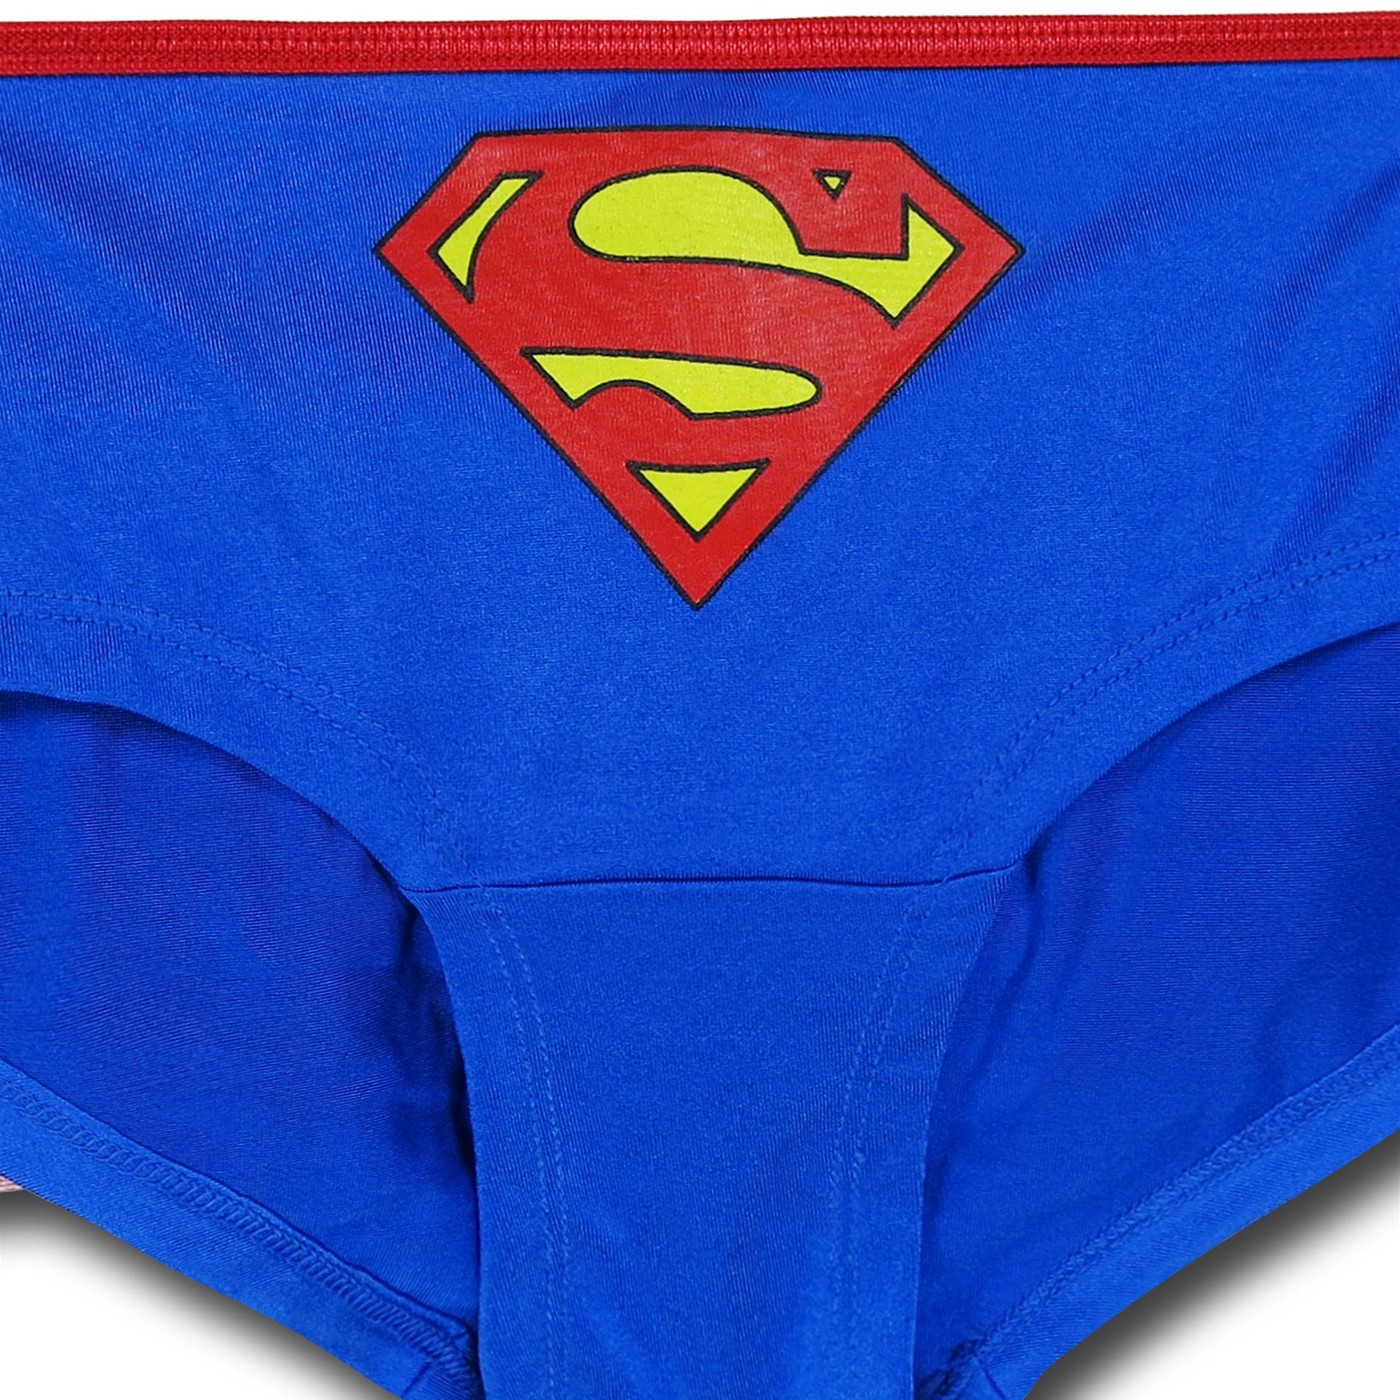 Supergirl Women's Panty w/Tutu